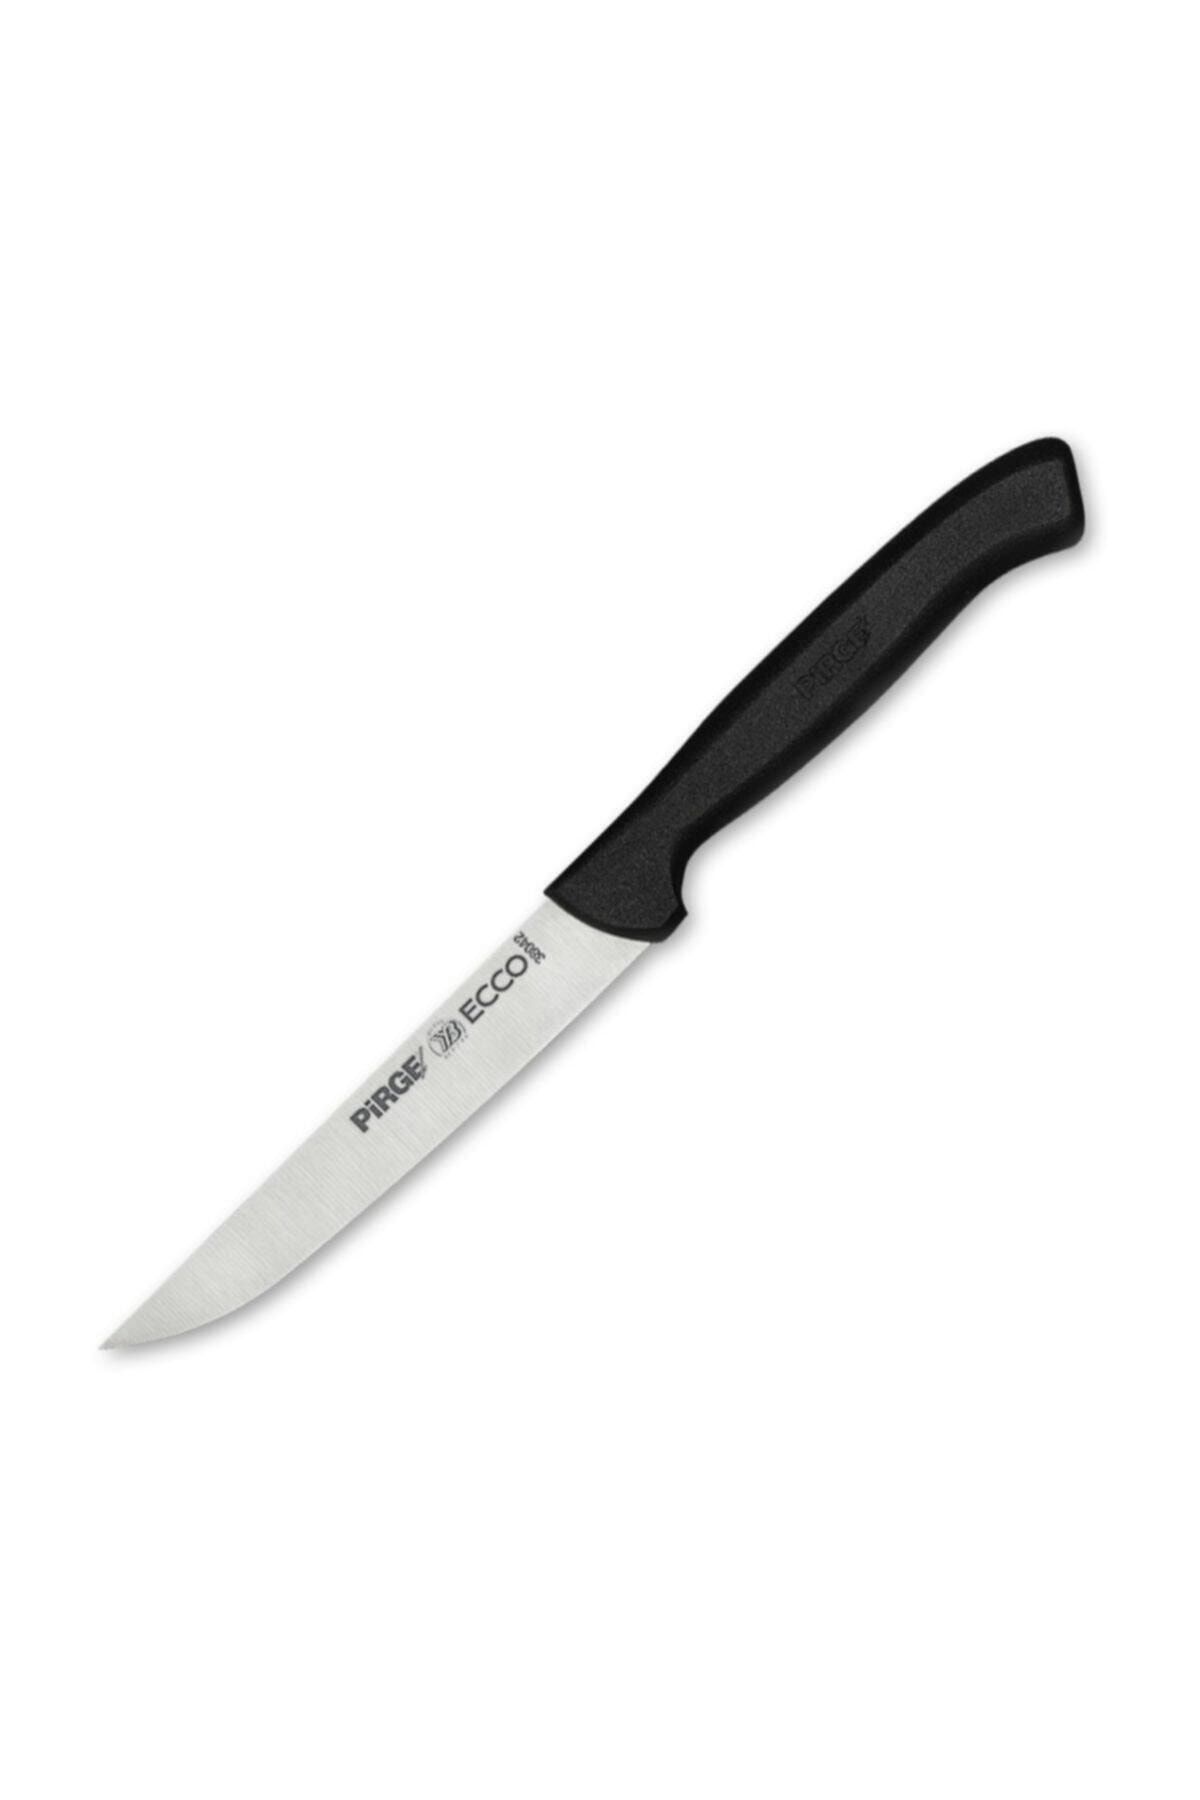 Pirge Ecco 38342 Ecco Balık Temizleme Bıçağı 12 Cm - Profesyonel